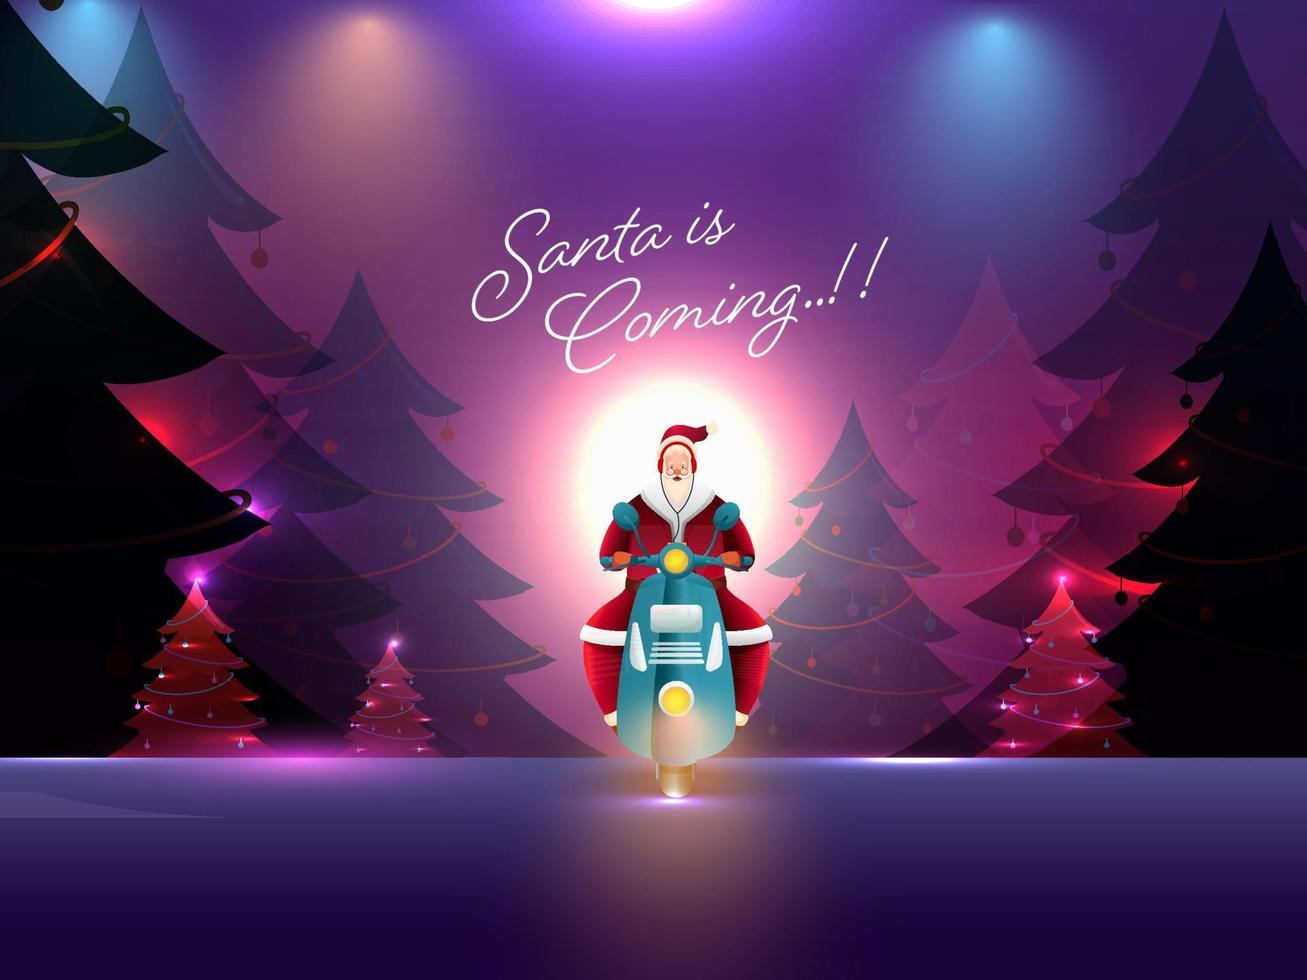 abstract lichten focus achtergrond met decoratief Kerstmis bomen, de kerstman claus rijden scooter en gegeven bericht de kerstman is komt eraan. vector